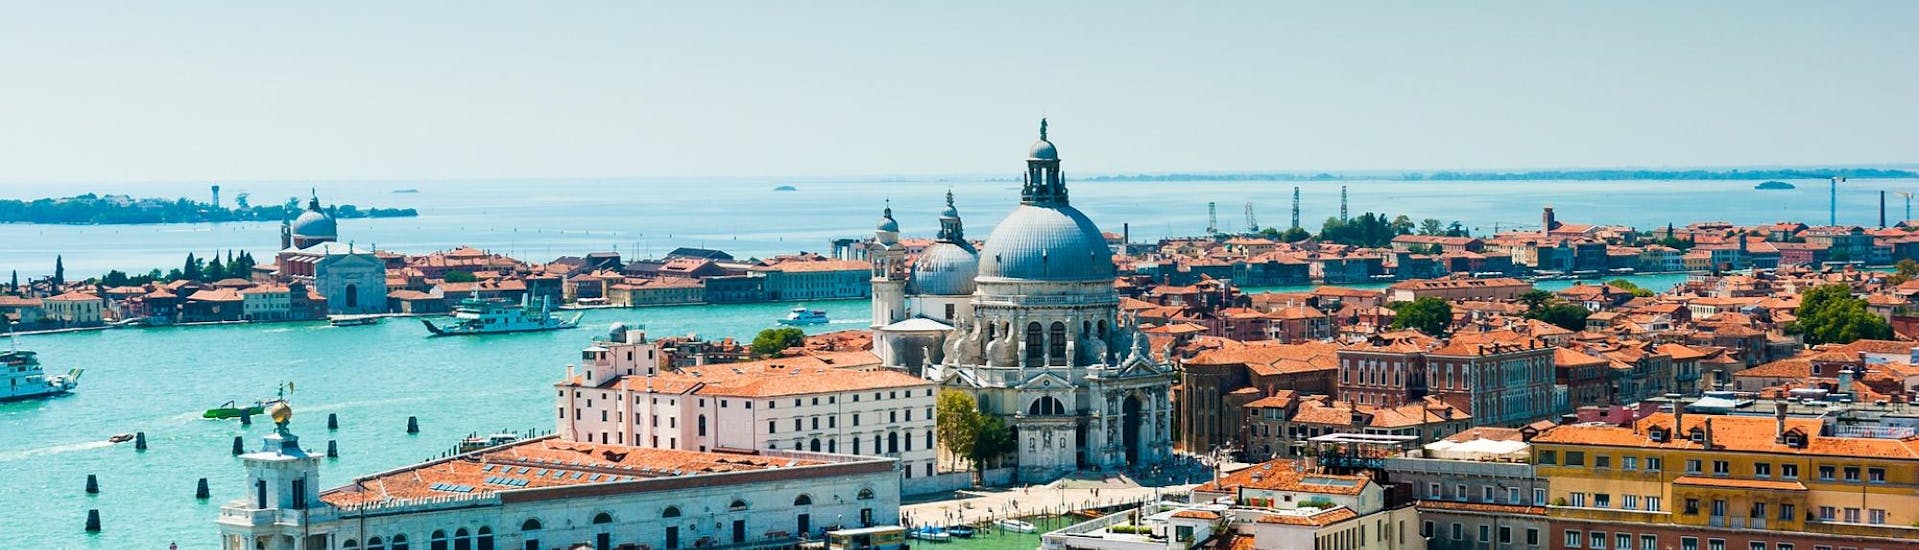 Panoramisch uitzicht over Venetië dat je kunt zien tijdens de boottocht naar Murano & Burano met ochtend in Venetië met Il Doge di Venezia.